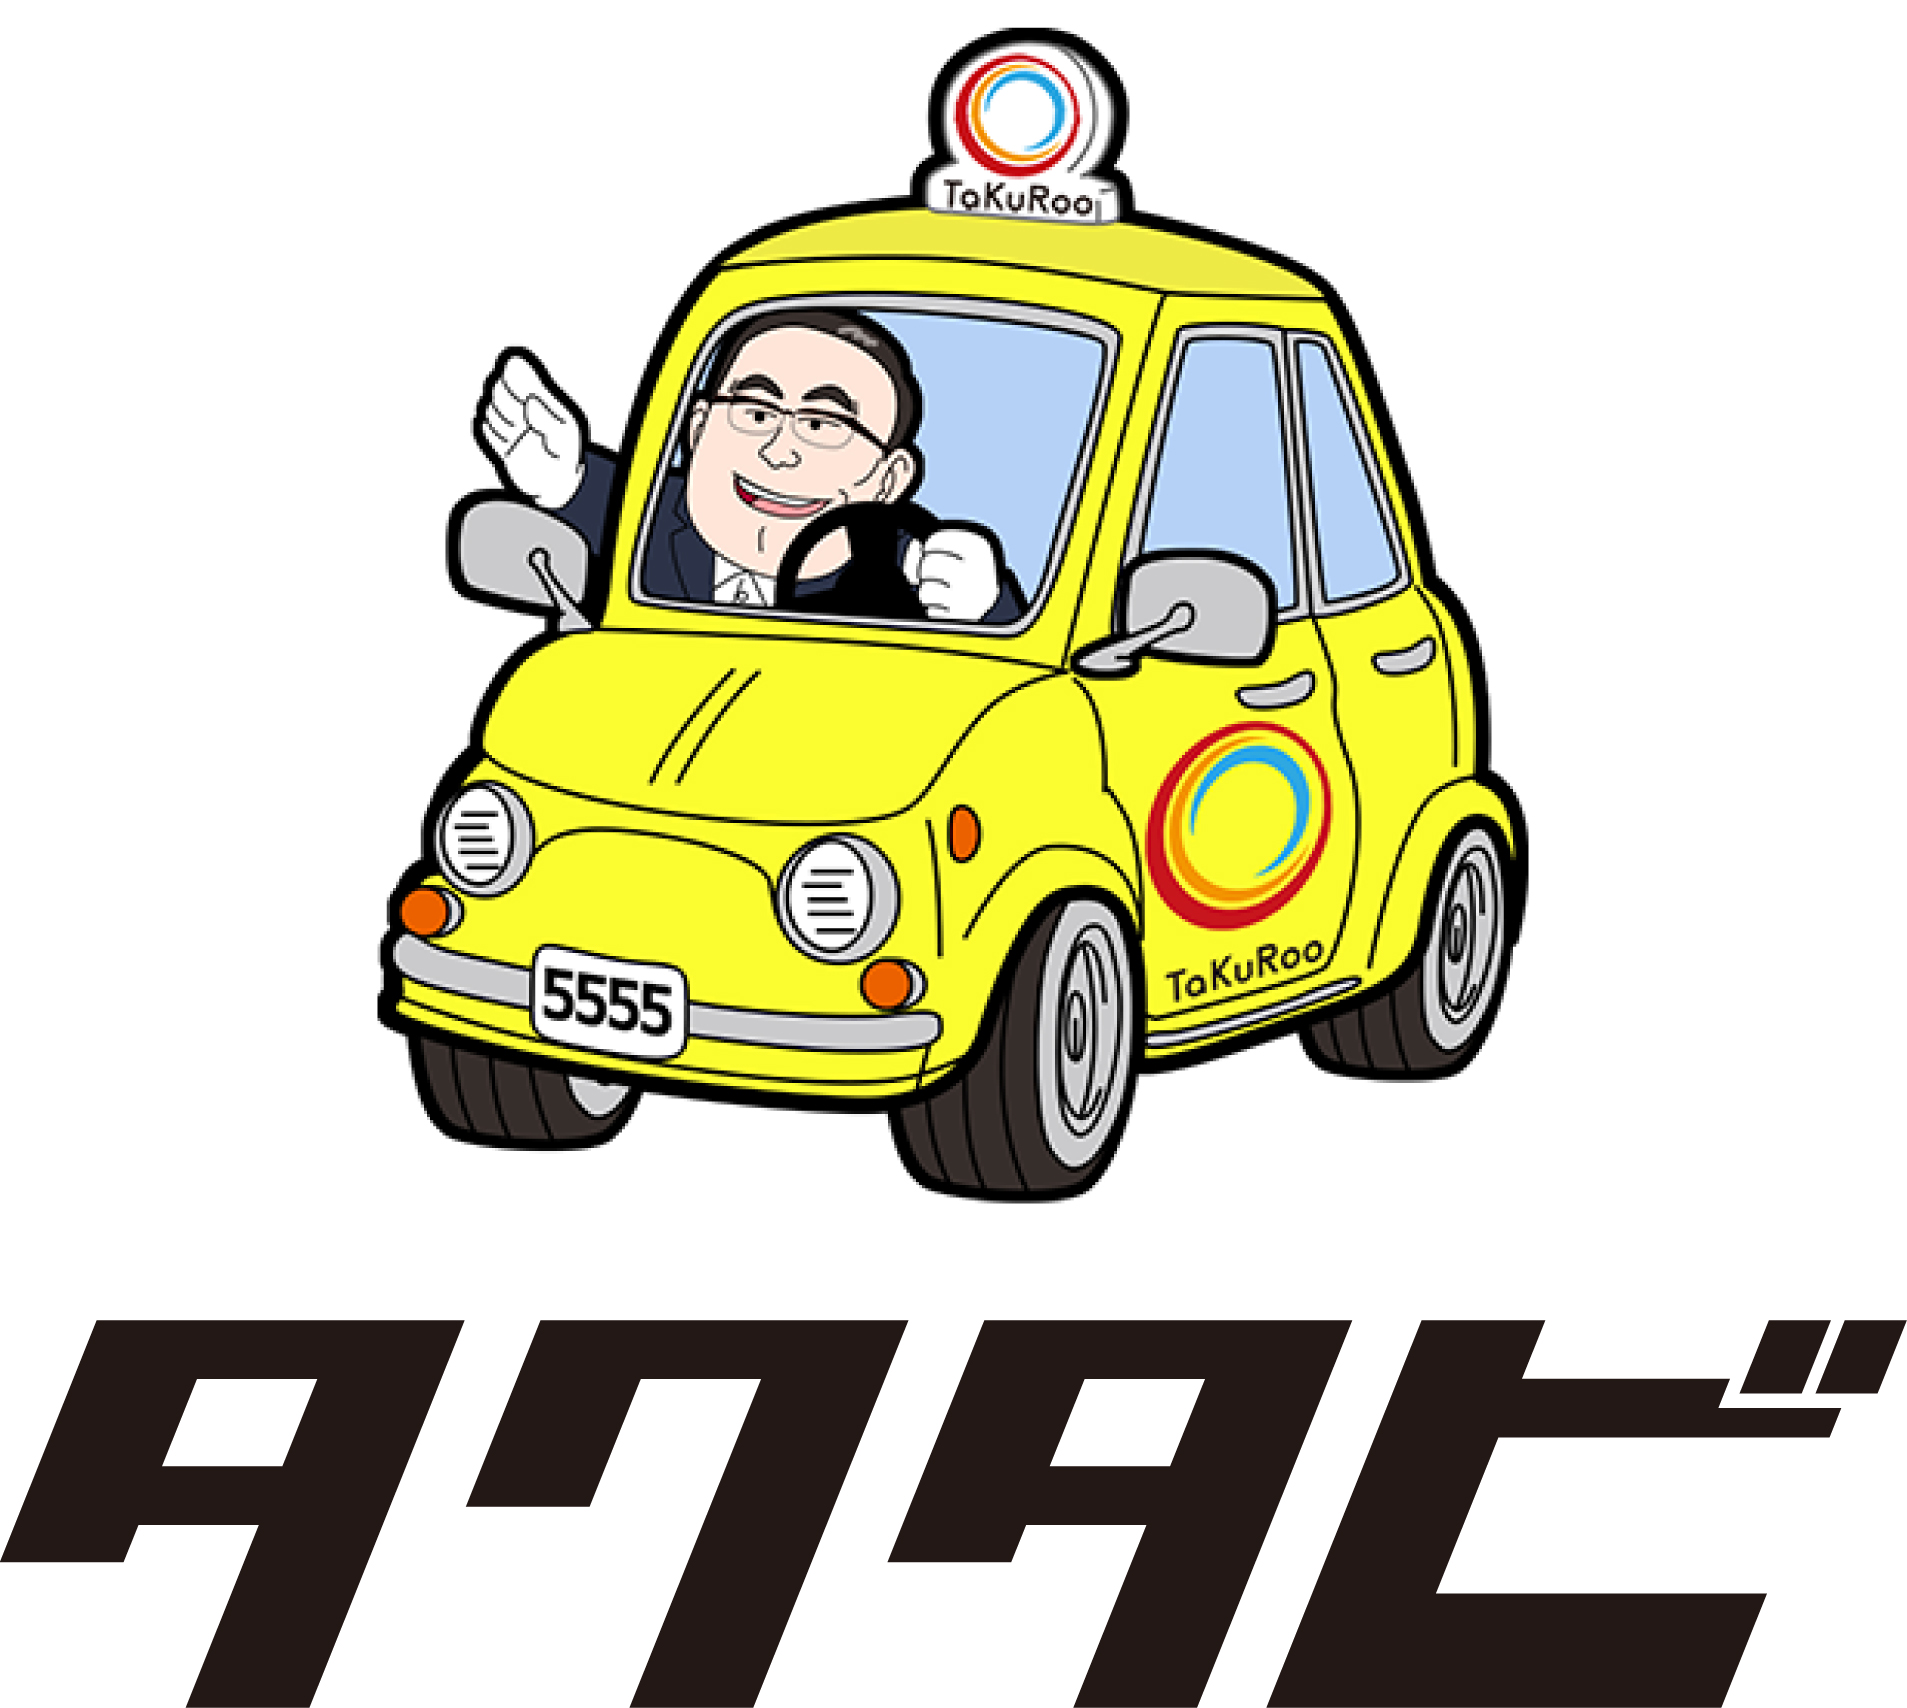 熊本のタクシー観光を楽しむなら「タクタビ」